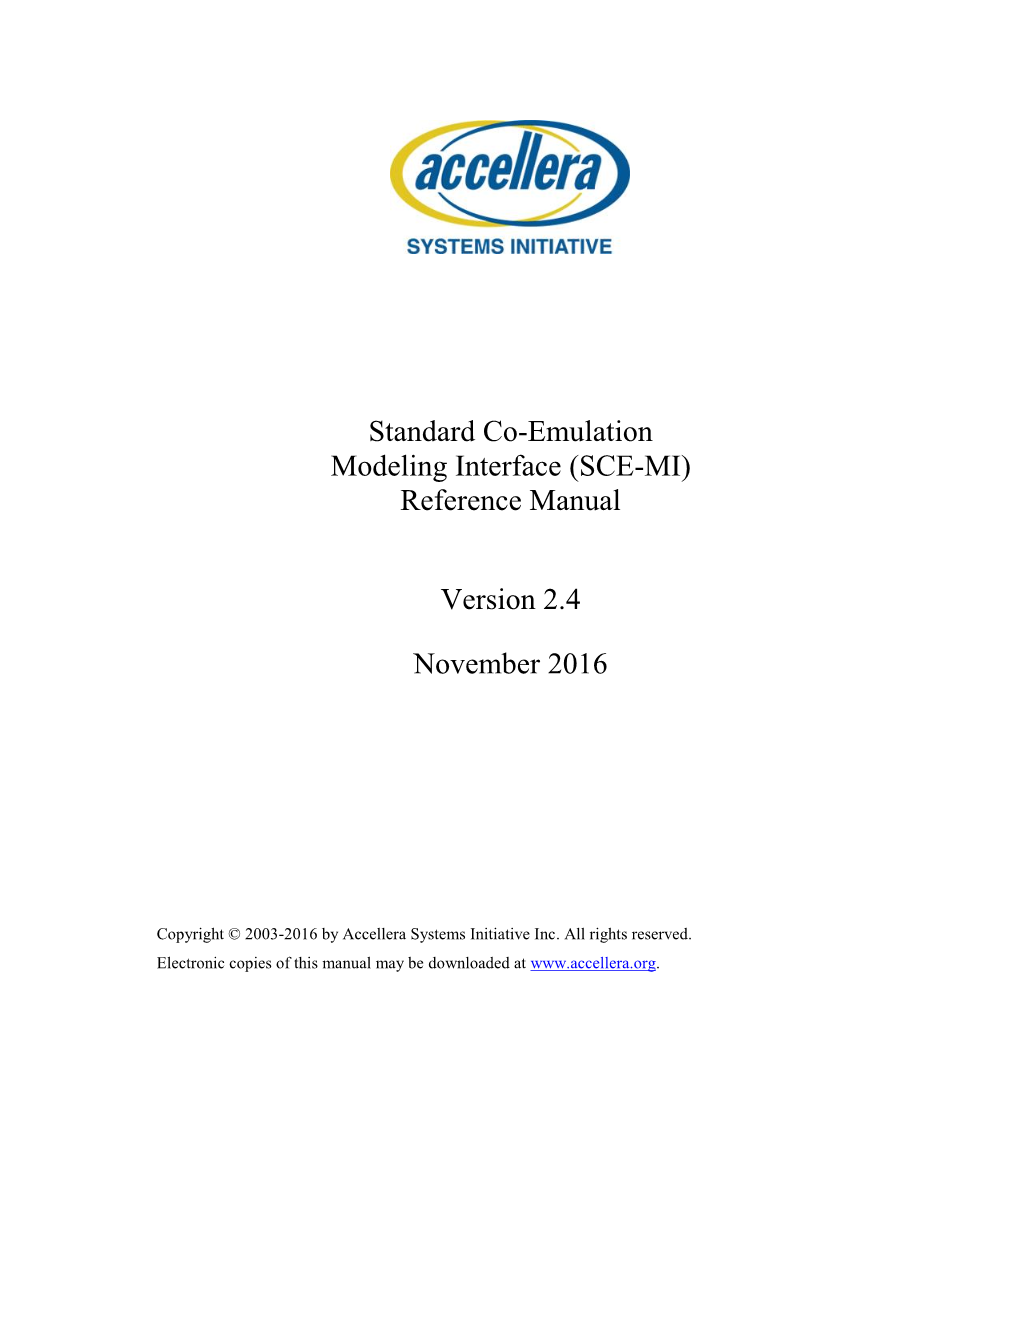 (SCE-MI) Reference Manual Version 2.4 November 2016